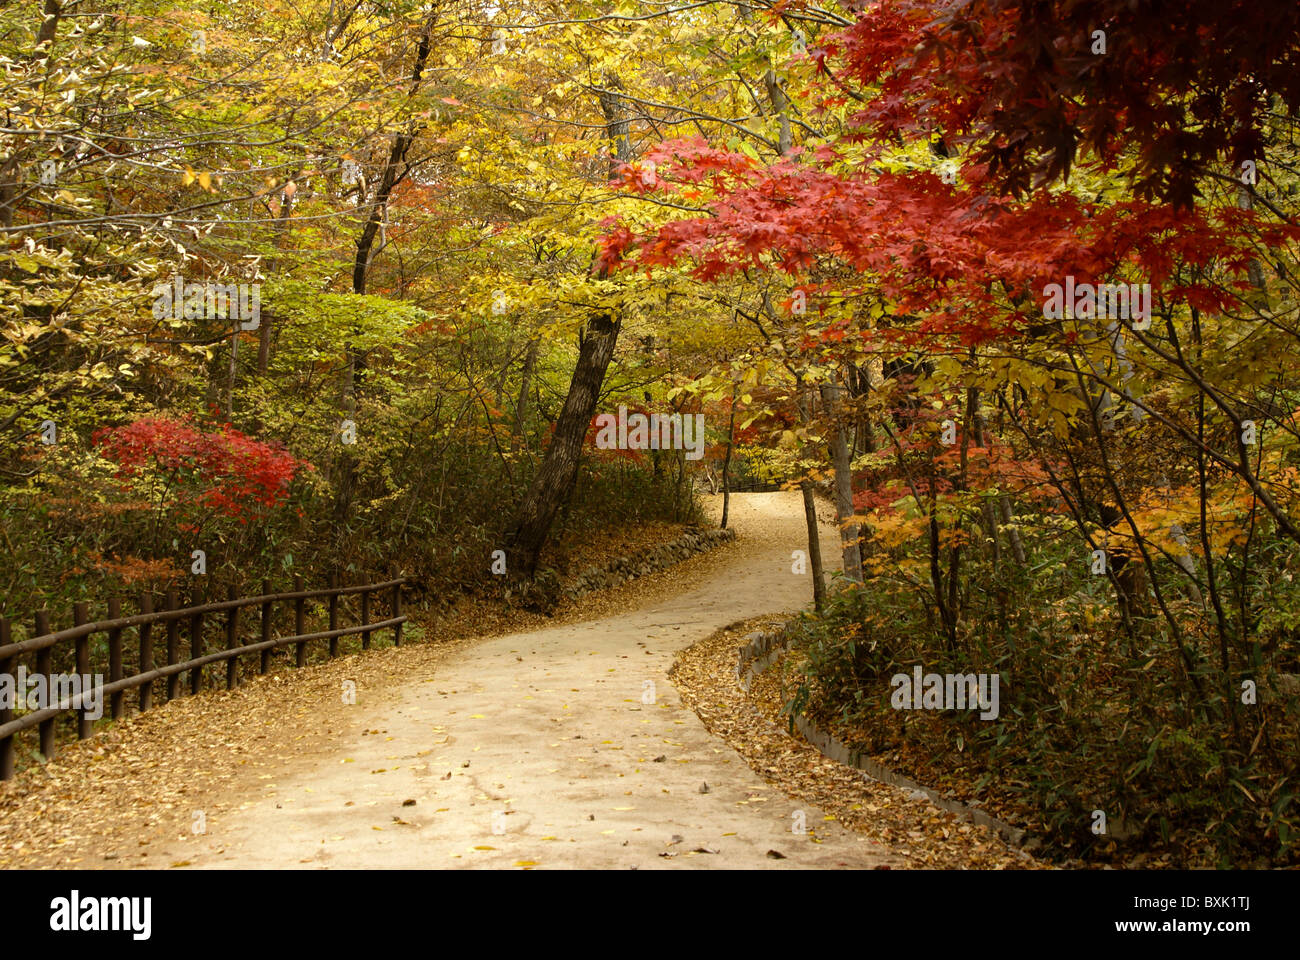 Curving path through autumn foliage, South Korea Stock Photo